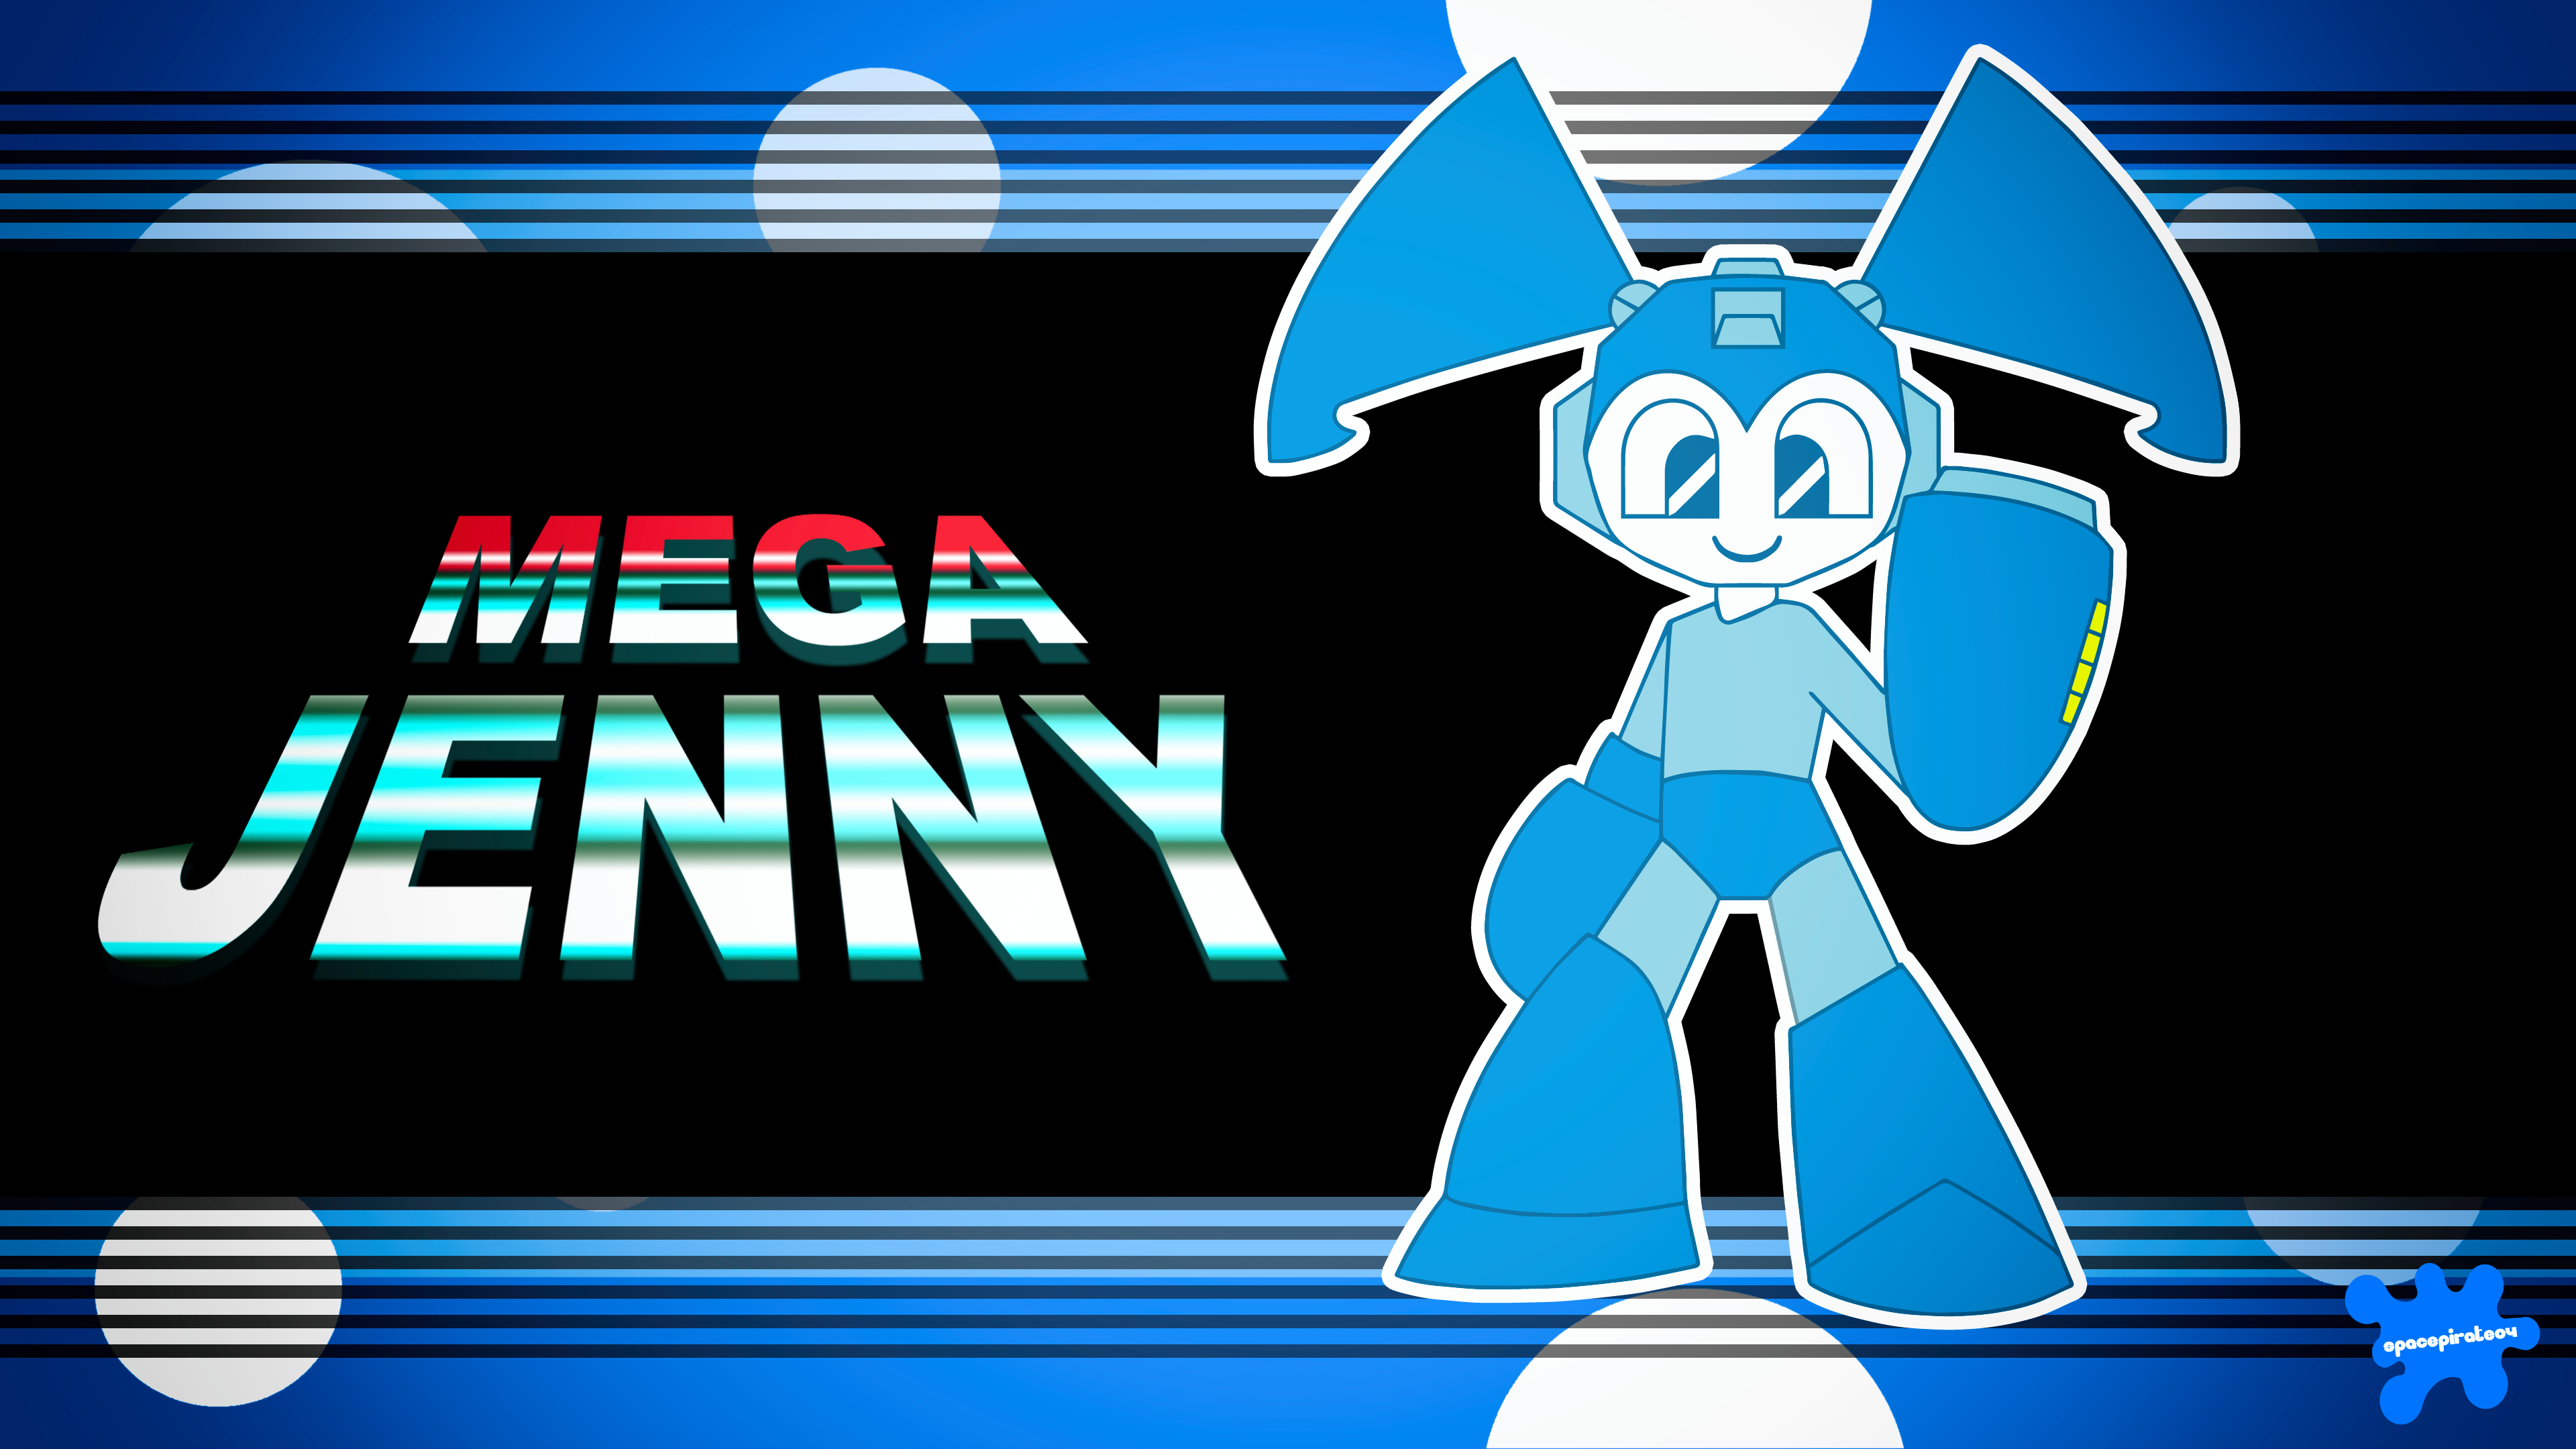 Mega Jenny By Spacepirate04 On Deviantart